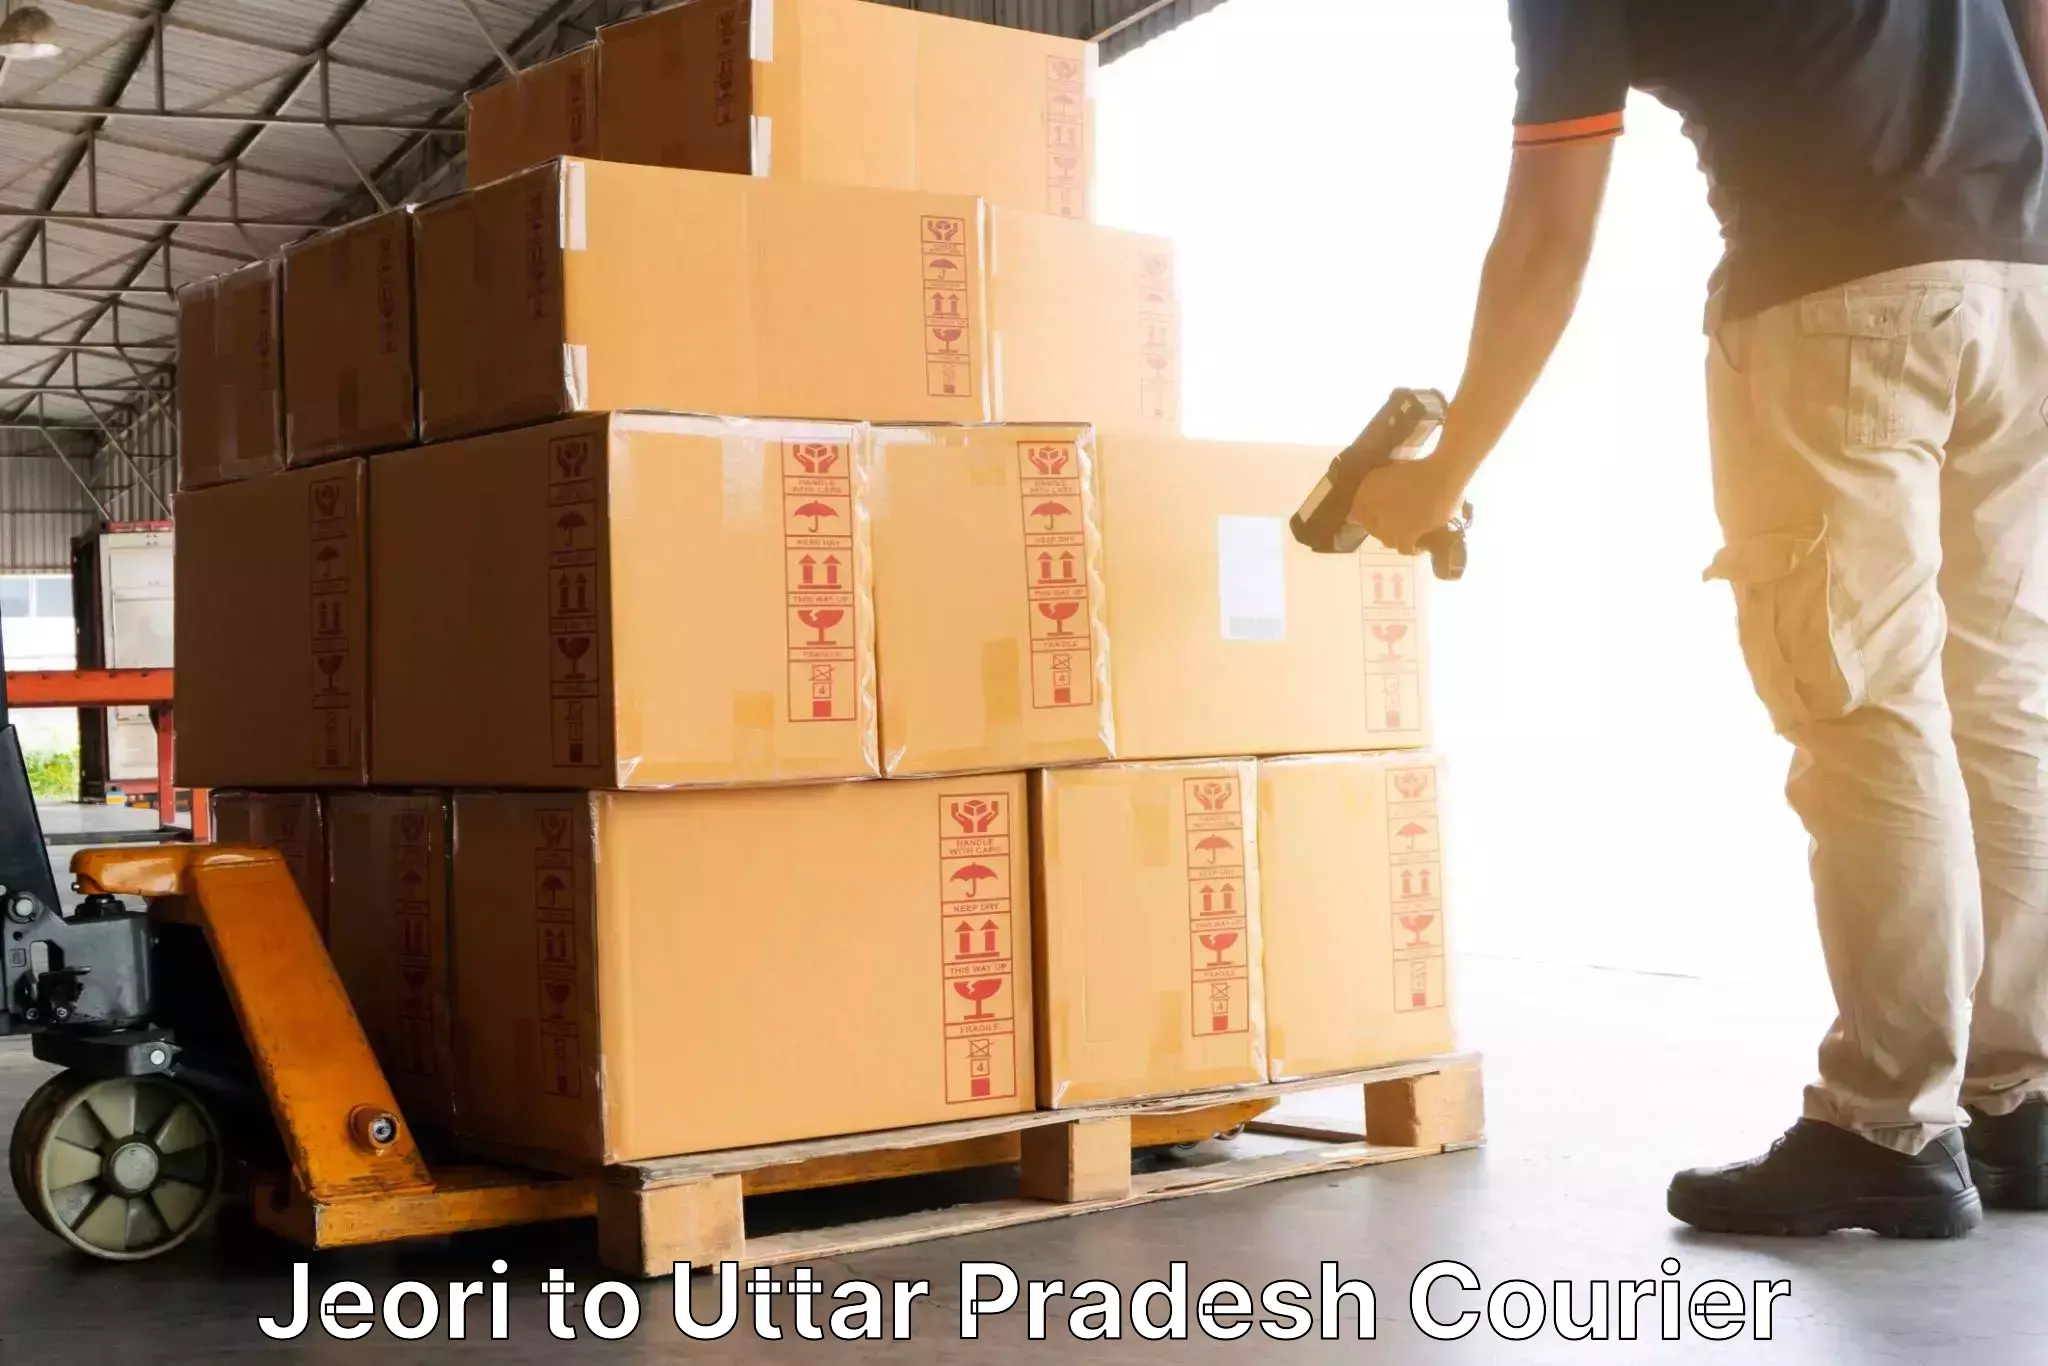 Digital courier platforms Jeori to Uttar Pradesh